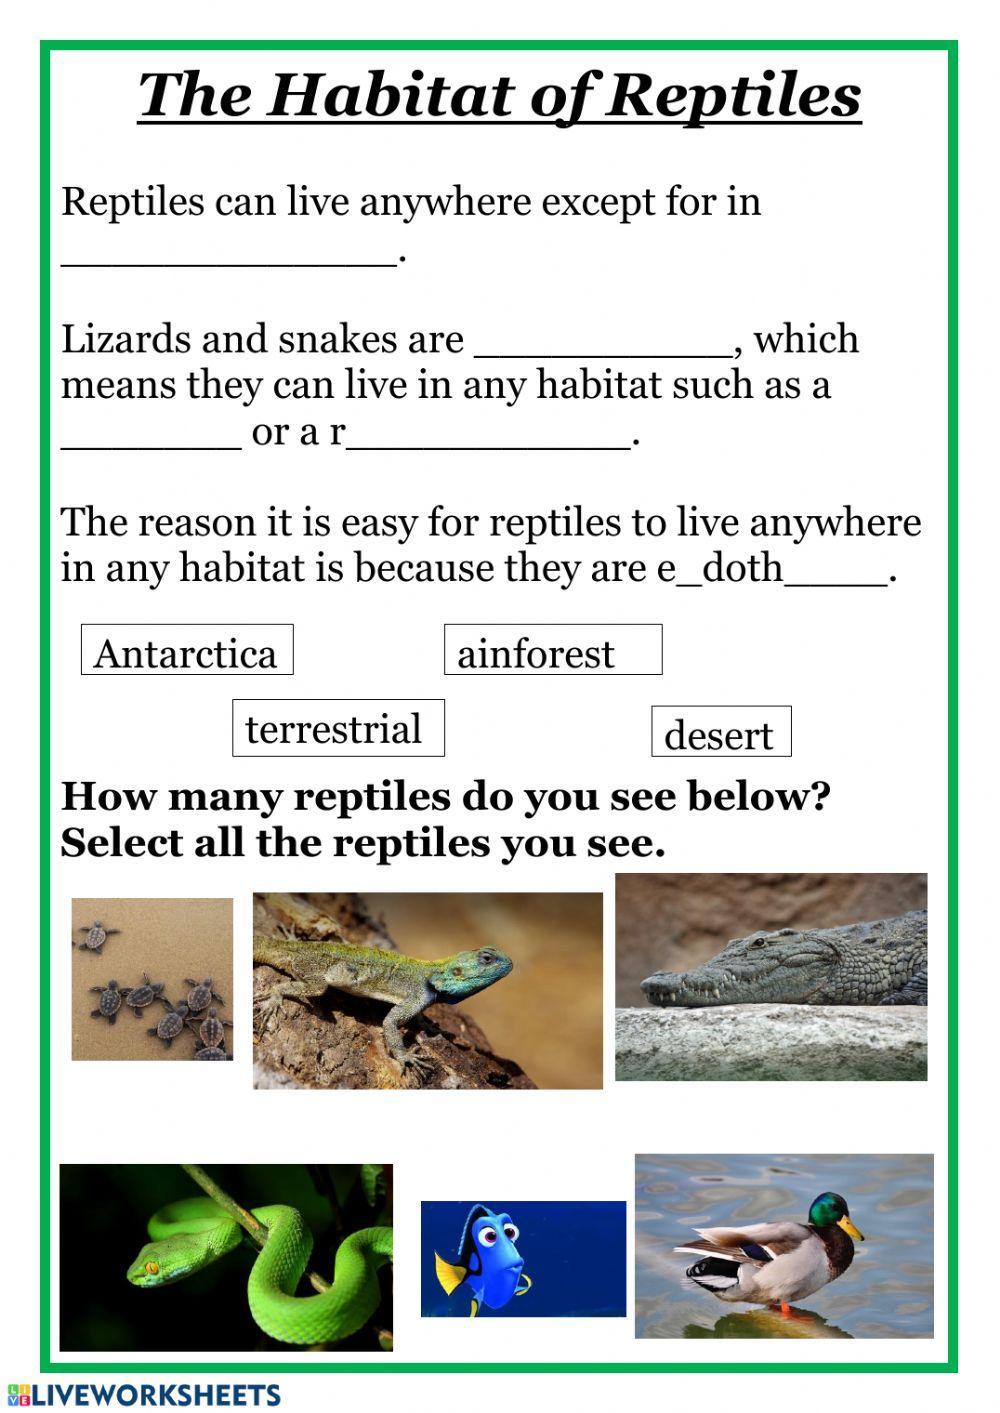 The Habitat of Reptiles